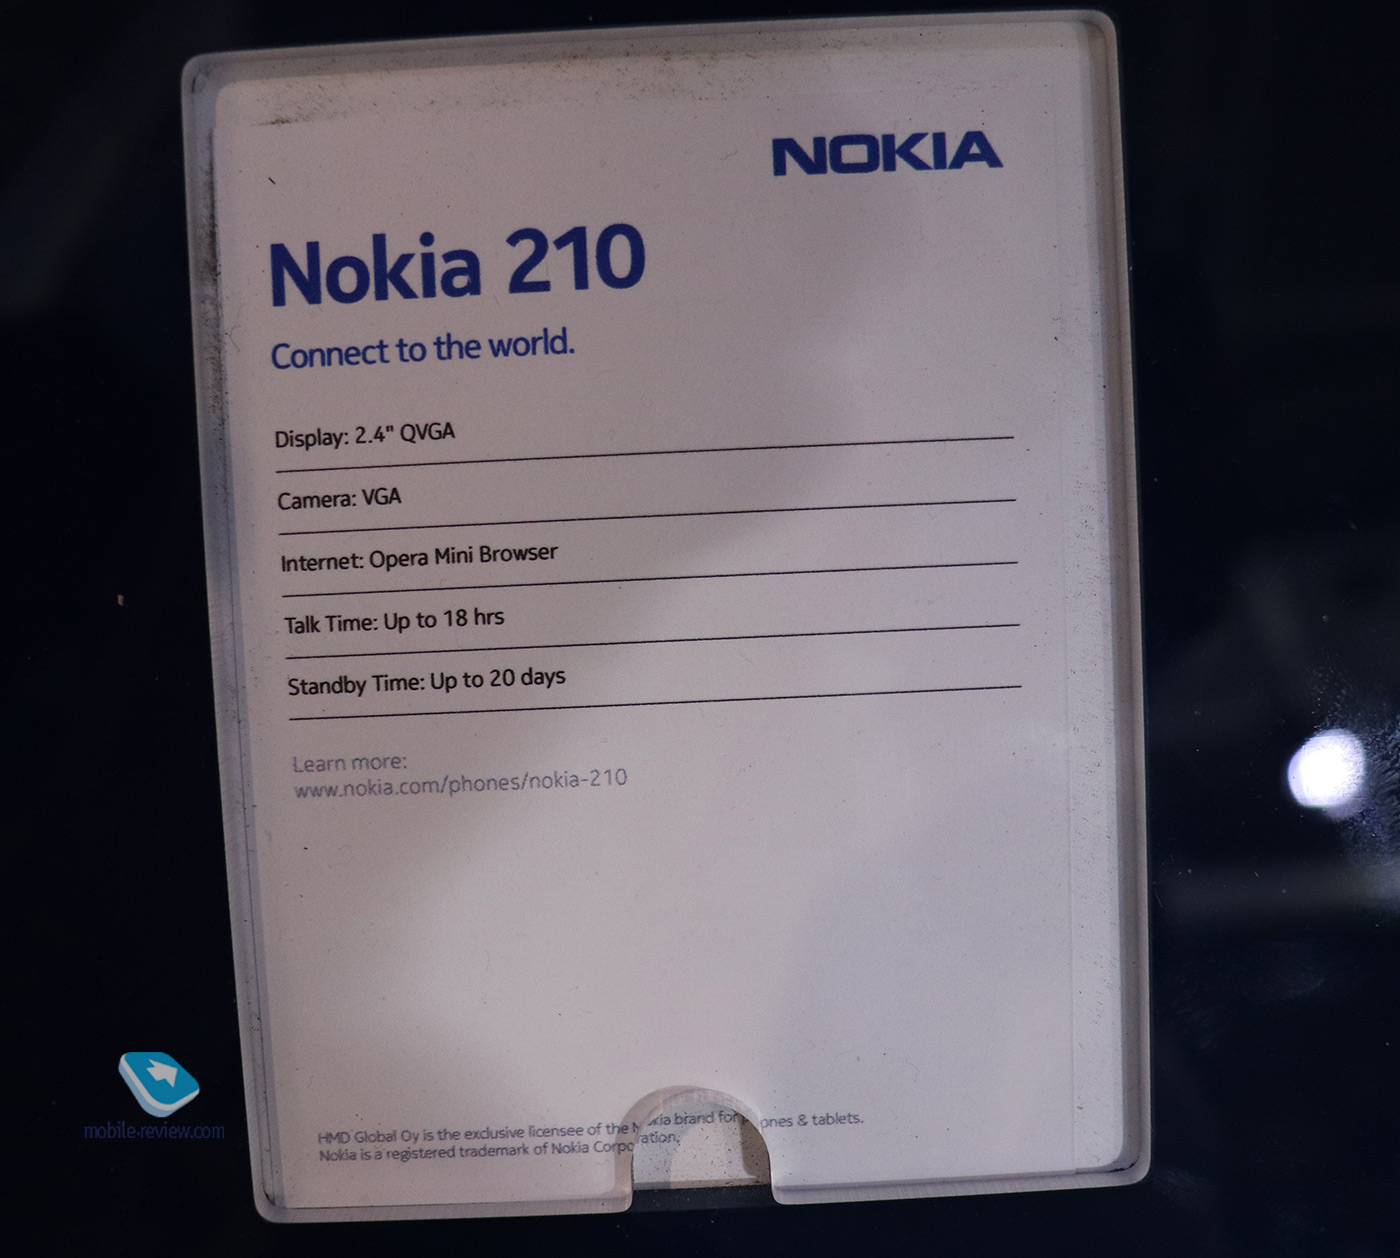 5 камер на Nokia 9 PureView – мало или достаточно? Все анонсы Nokia на MWC 2019